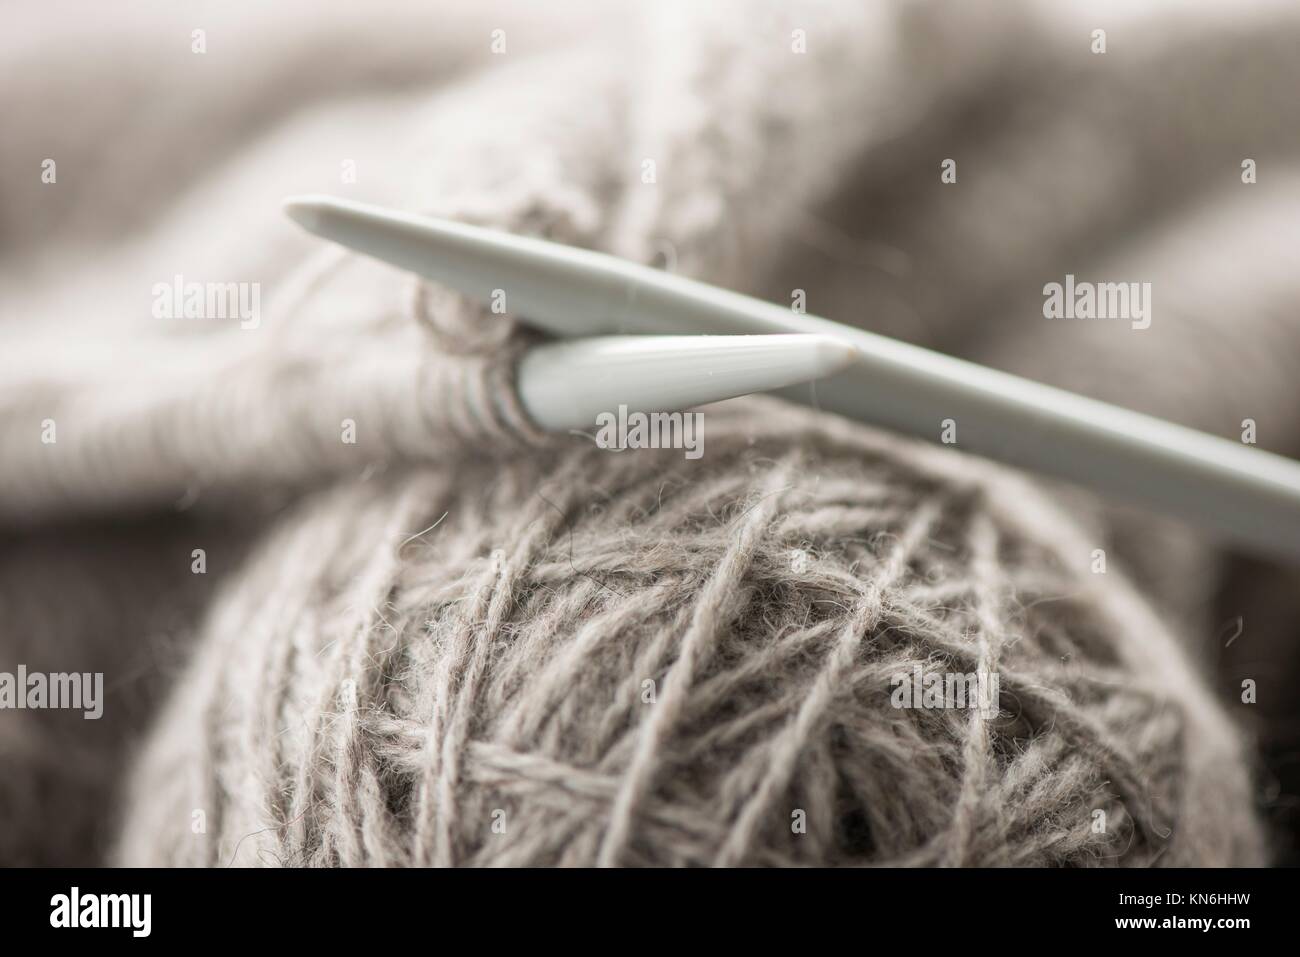 Hobby Supplies Knitting, Hobby Needlework Tools